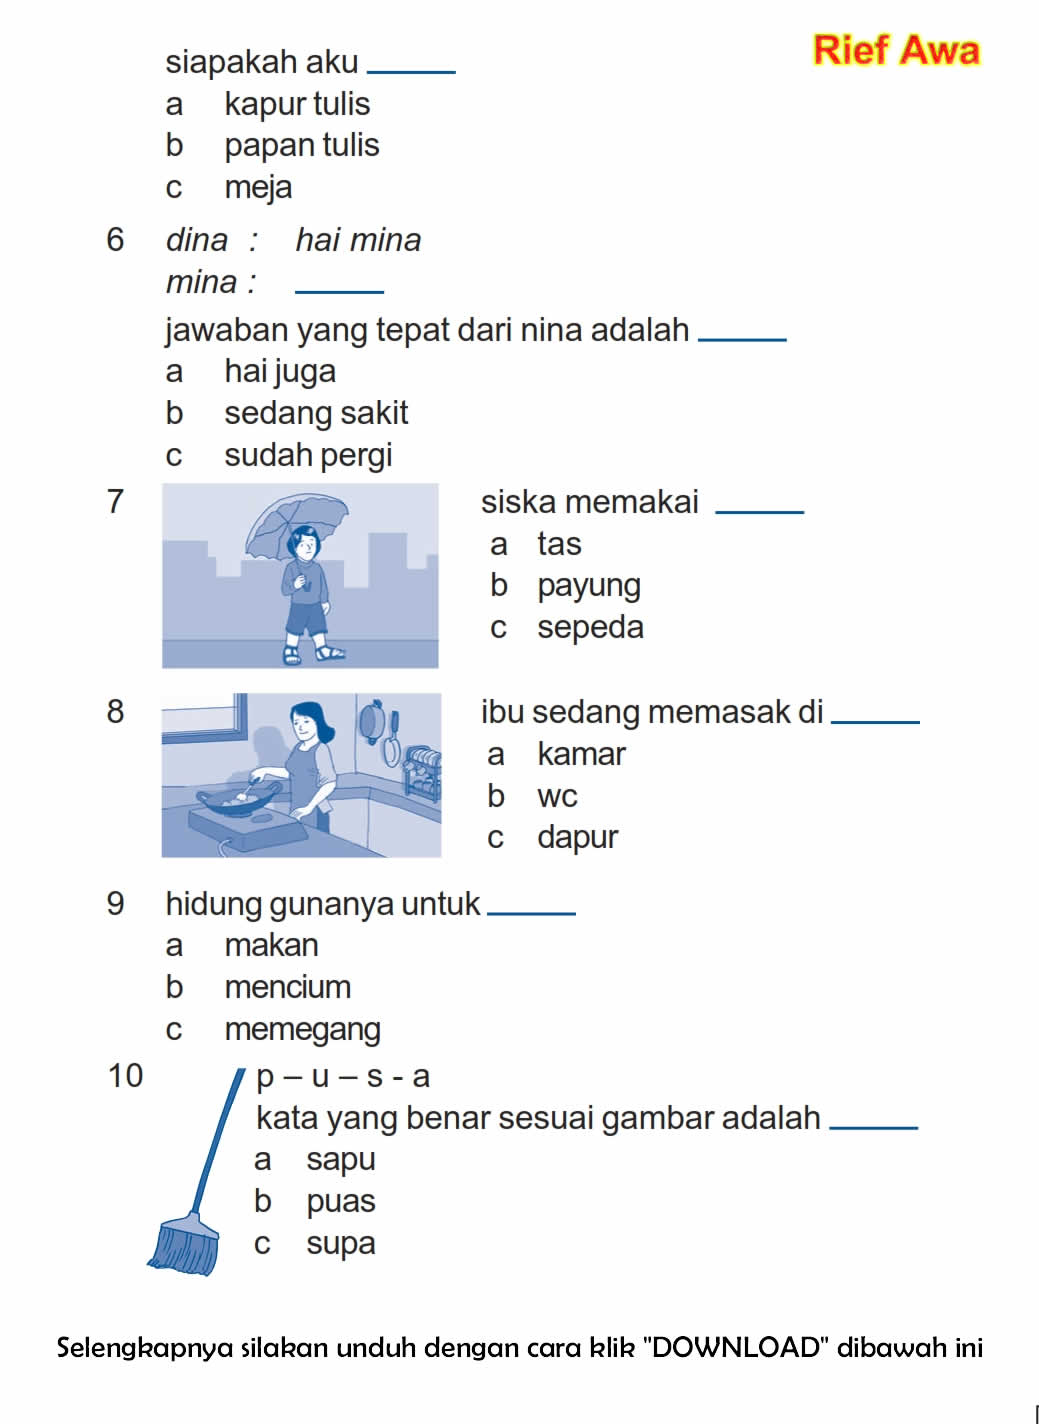 Download Soal UAS Ganjil Bahasa Indonesia Kelas 1 Semester 1 ~ Rief Awa